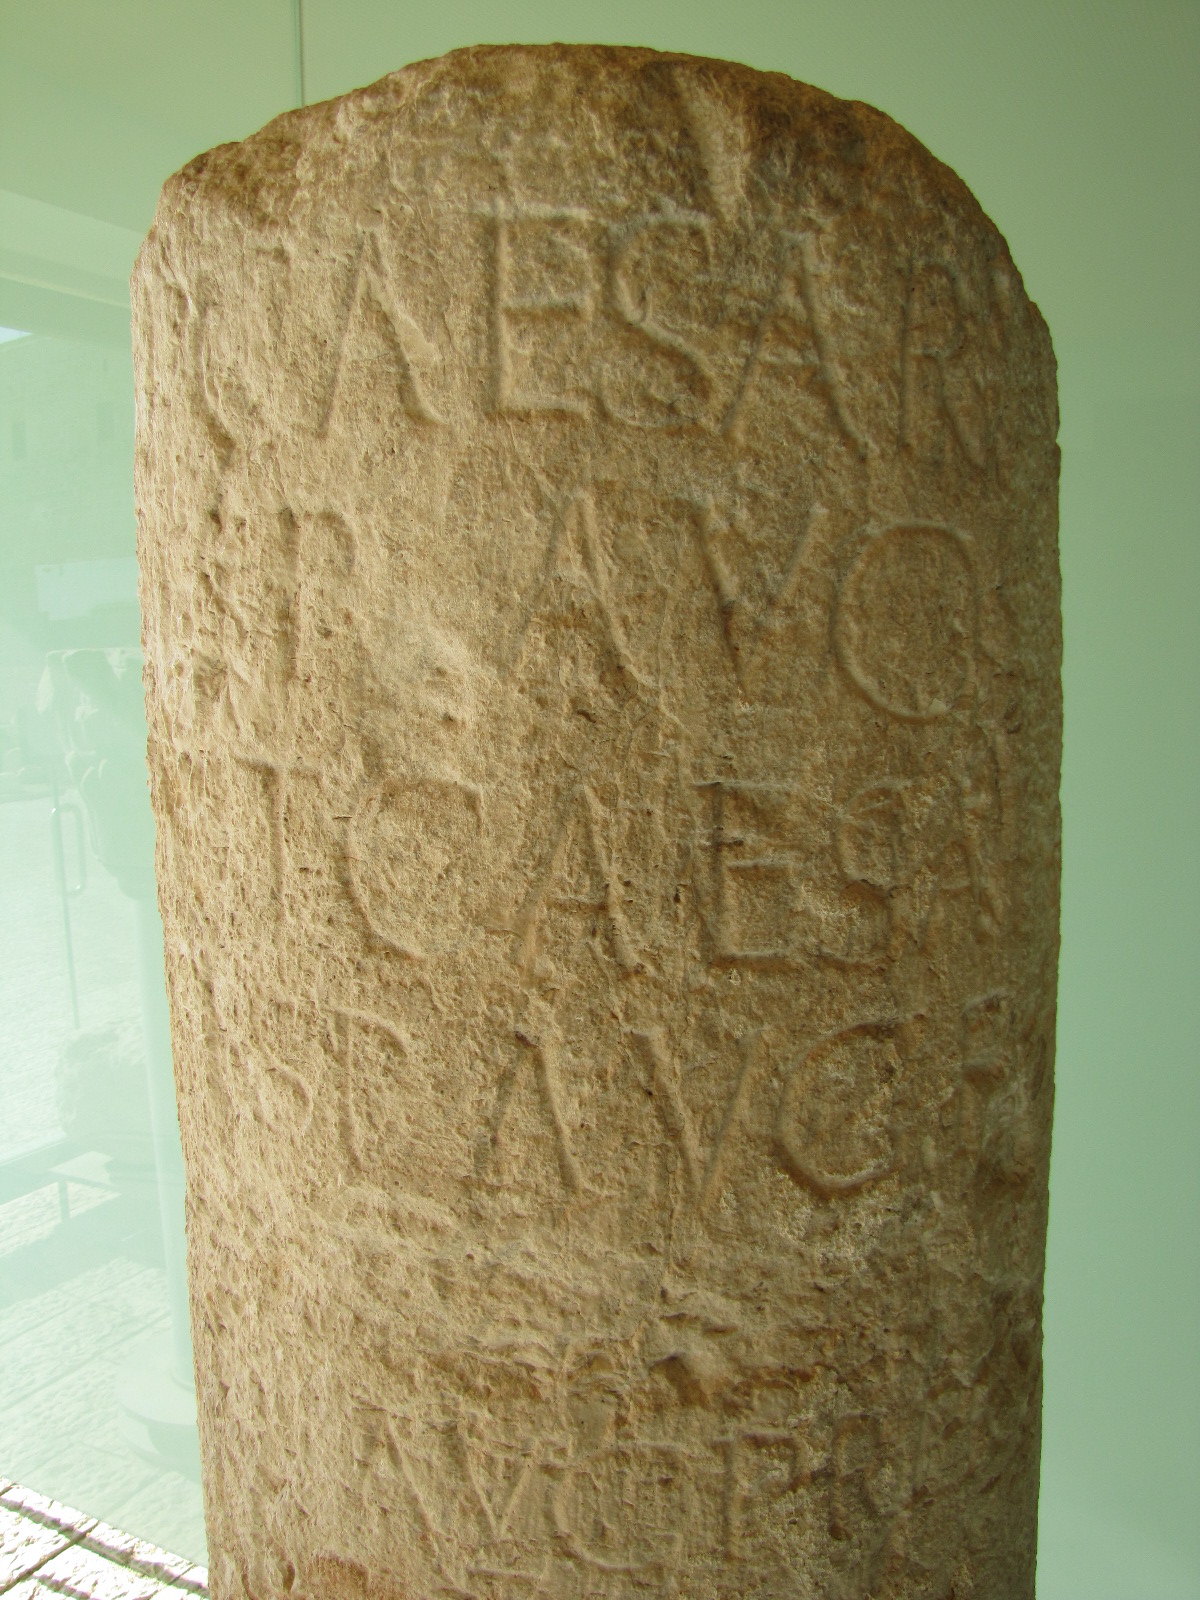 Roman column of Vespasian and Titus in Jerusalem, Imperator Caesar Vespasianus Legio X Fretensis, 10th tenth Roman Legion